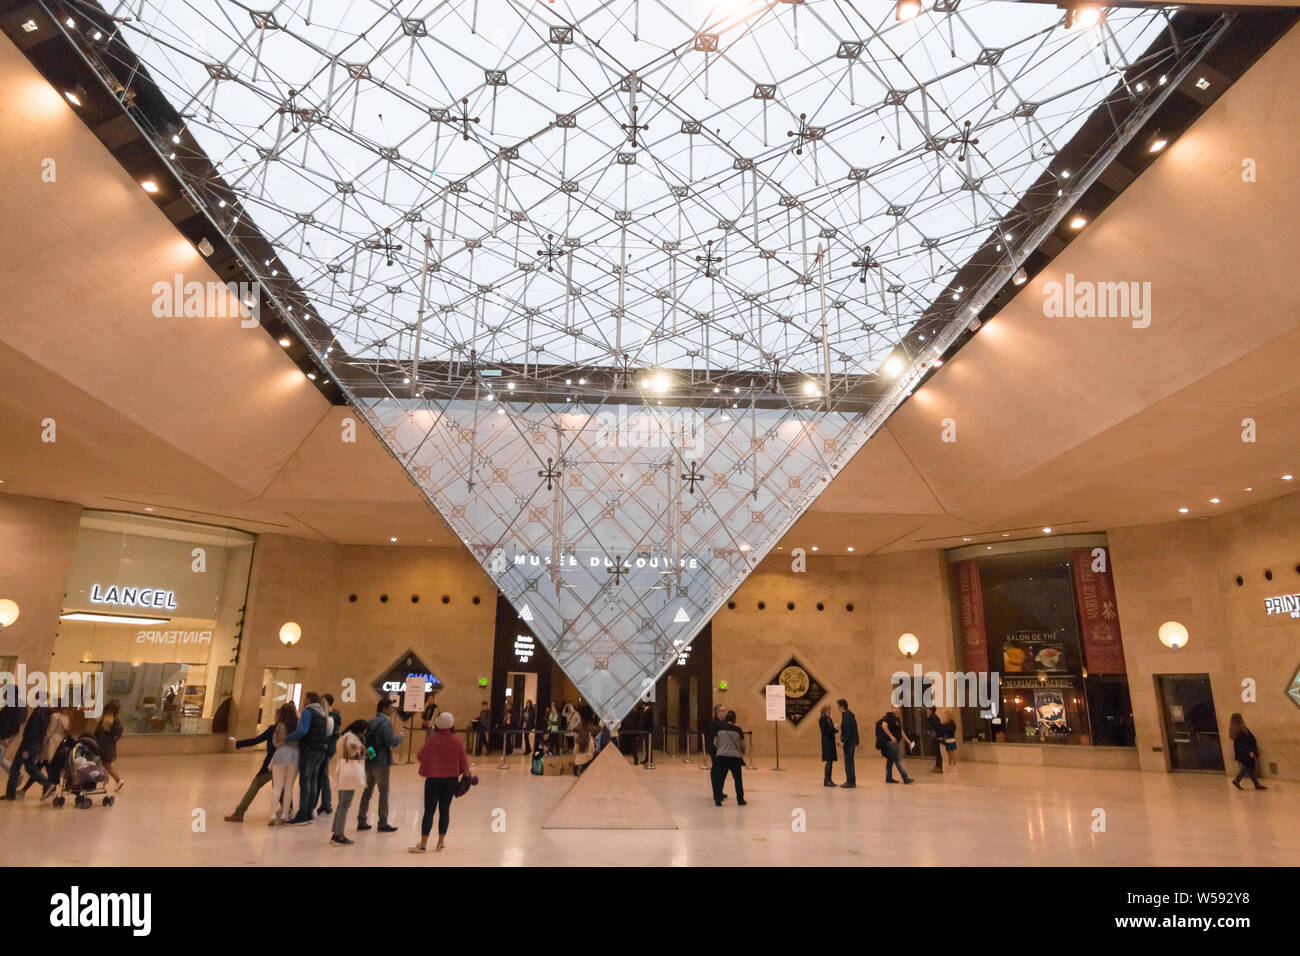 Ottima vista panoramica di tutto verso il basso di puntamento a piramide in vetro, chiamato piramide invertita, costruito nel Carrousel du Louvre, un sotterraneo shopping... Foto Stock